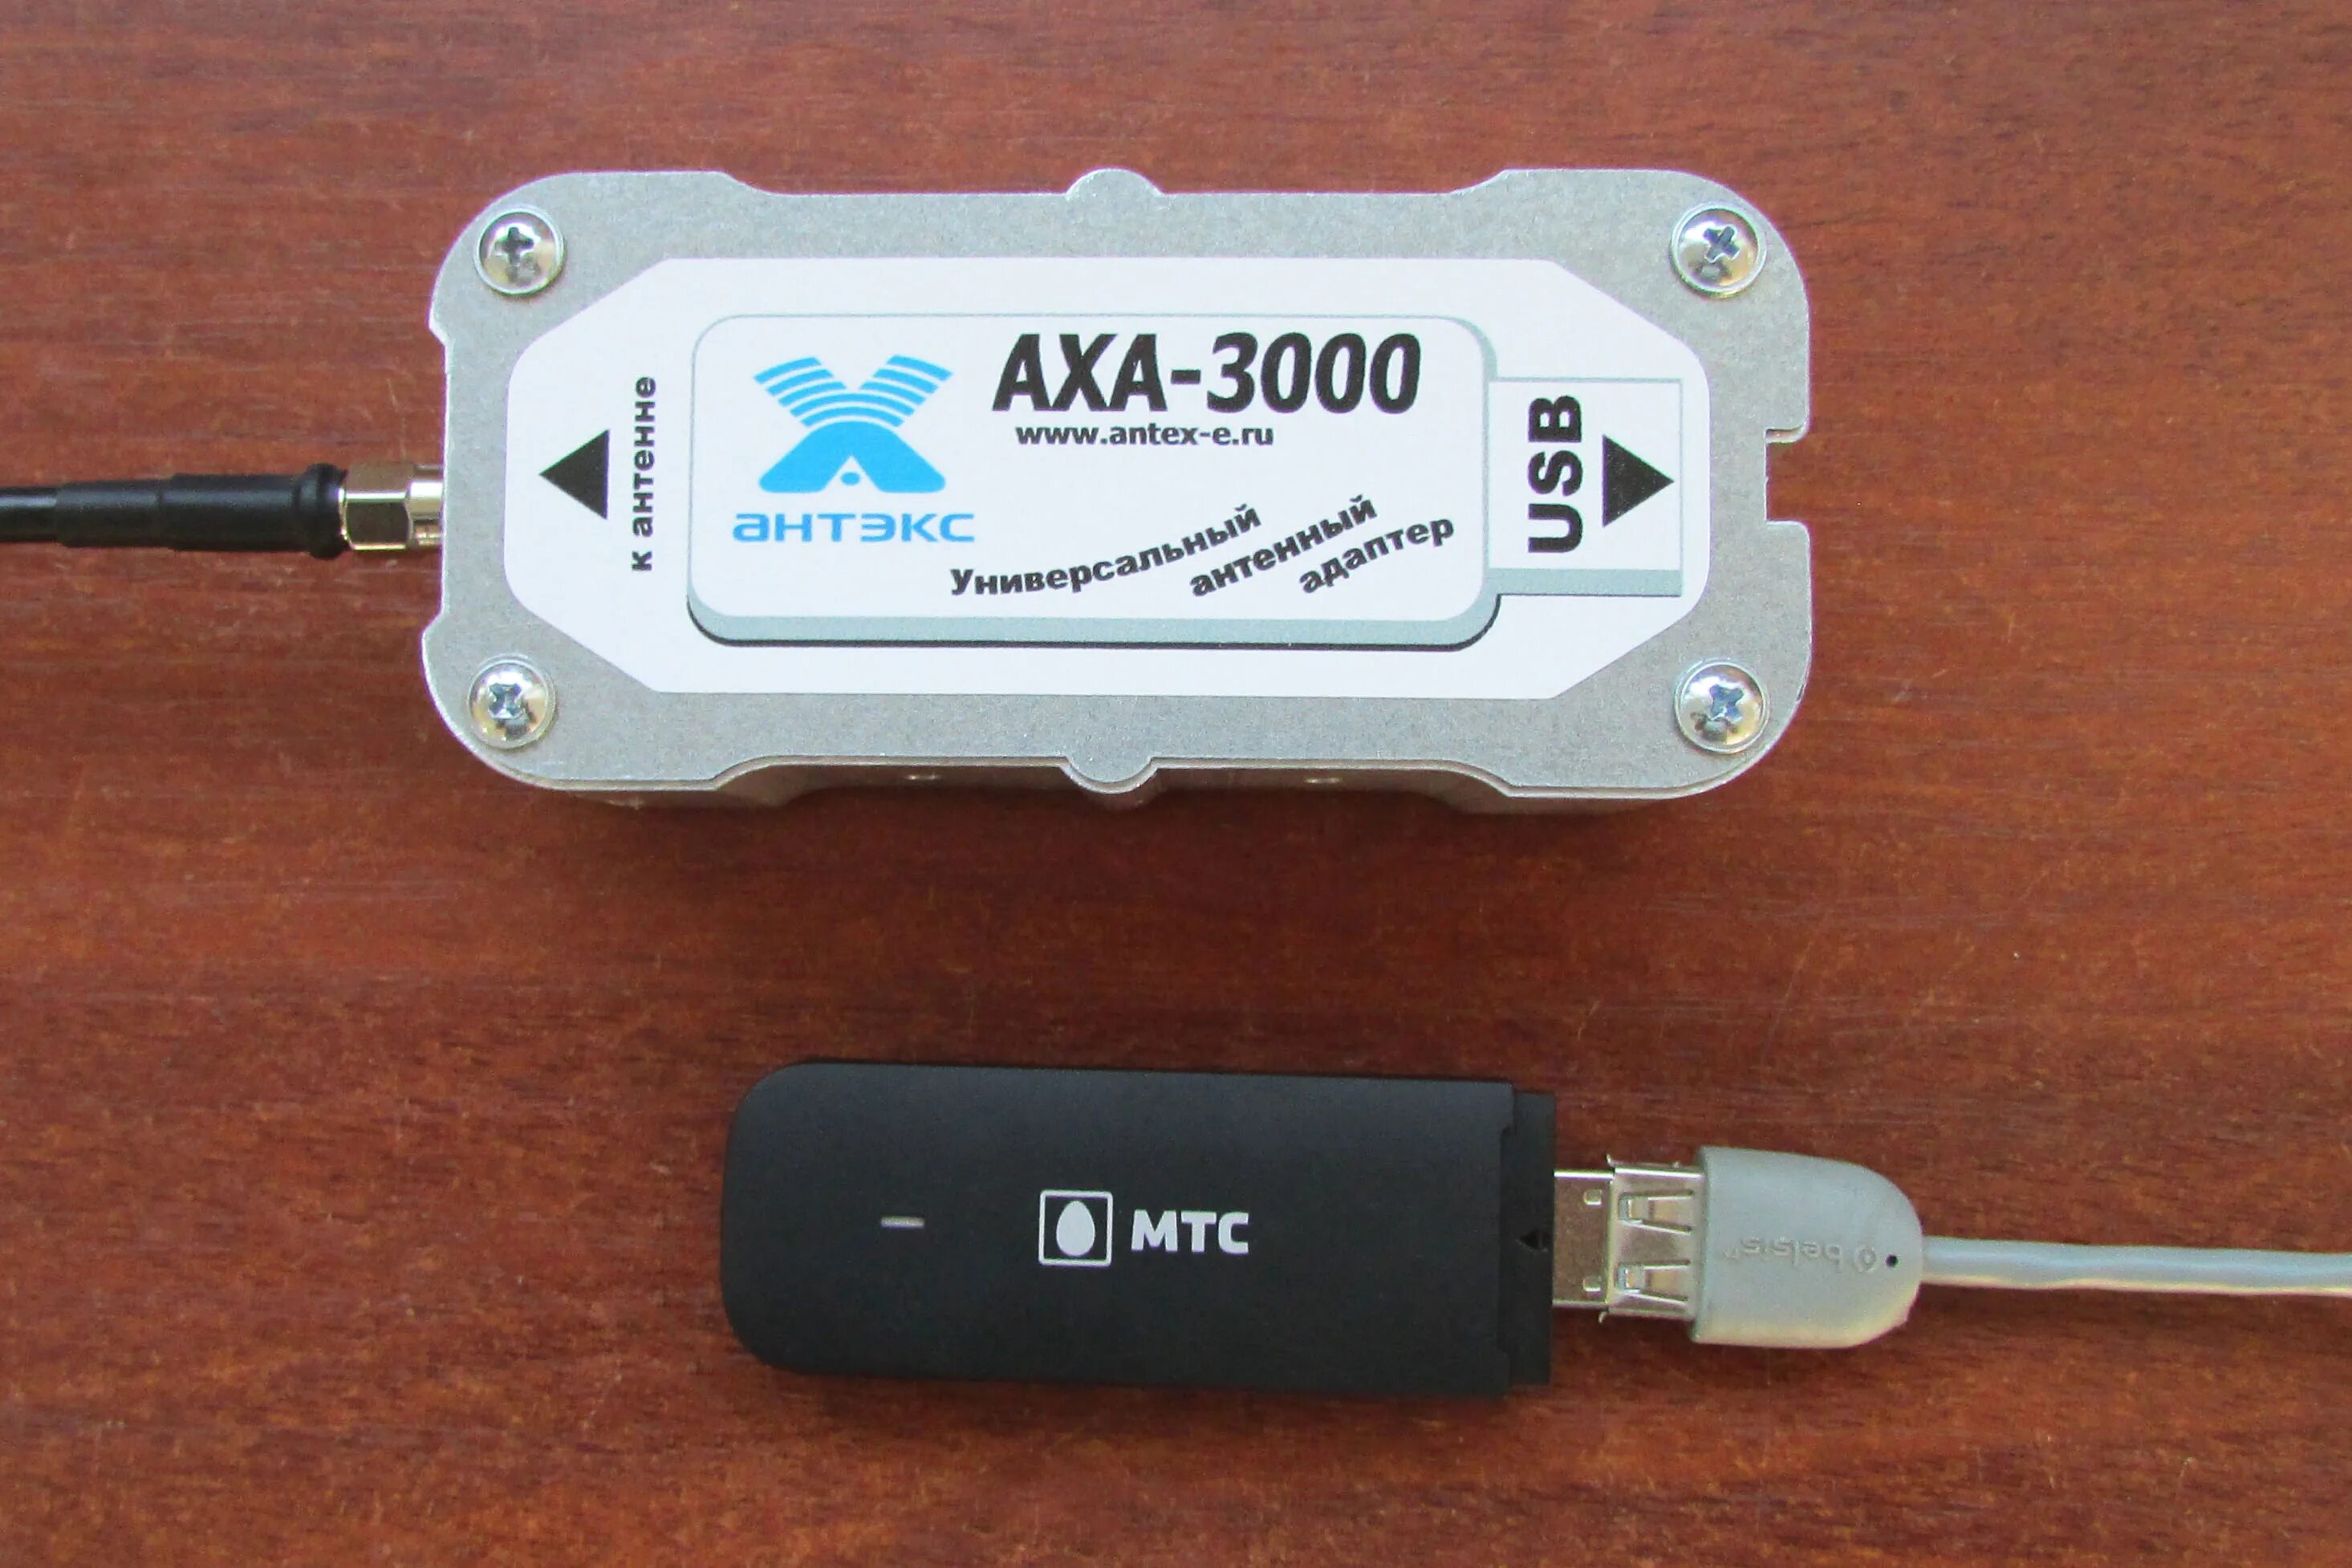 Антенна для юсб модема 4g. Усилитель для USB модема 4g. USB удлинитель для 4g модема. Адаптер универсальный AXA-3000 (для USB модема). Купить усилители модемов